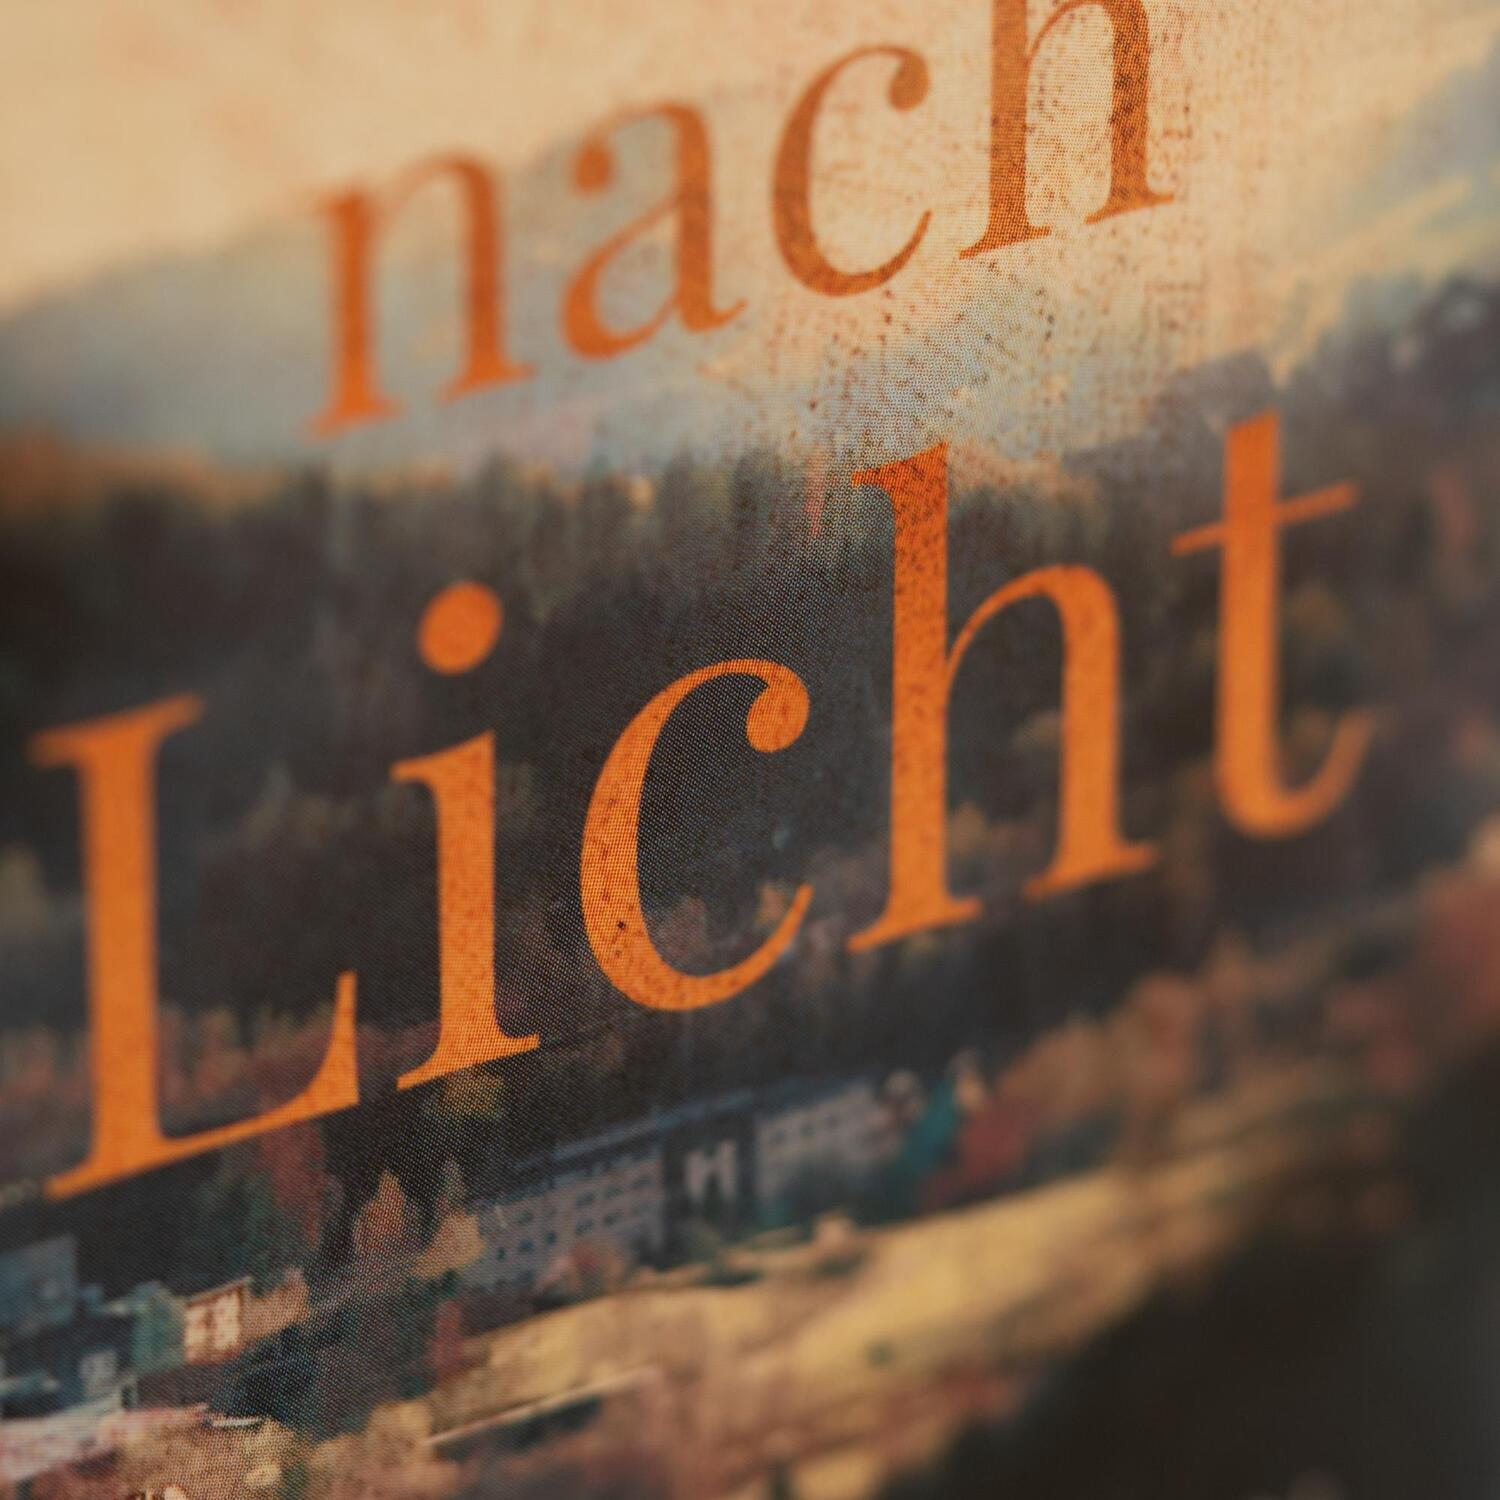 Bild: 9783365001172 | Die Sehnsucht nach Licht | Roman | Kati Naumann | Buch | 416 S. | 2022